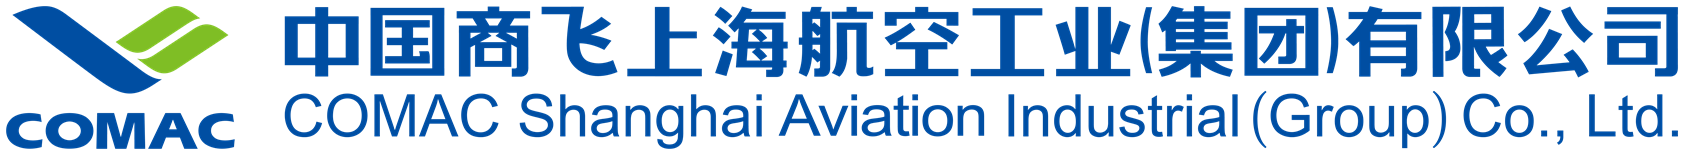 中国商飞上海航空工业(集团)有限公司-04.png